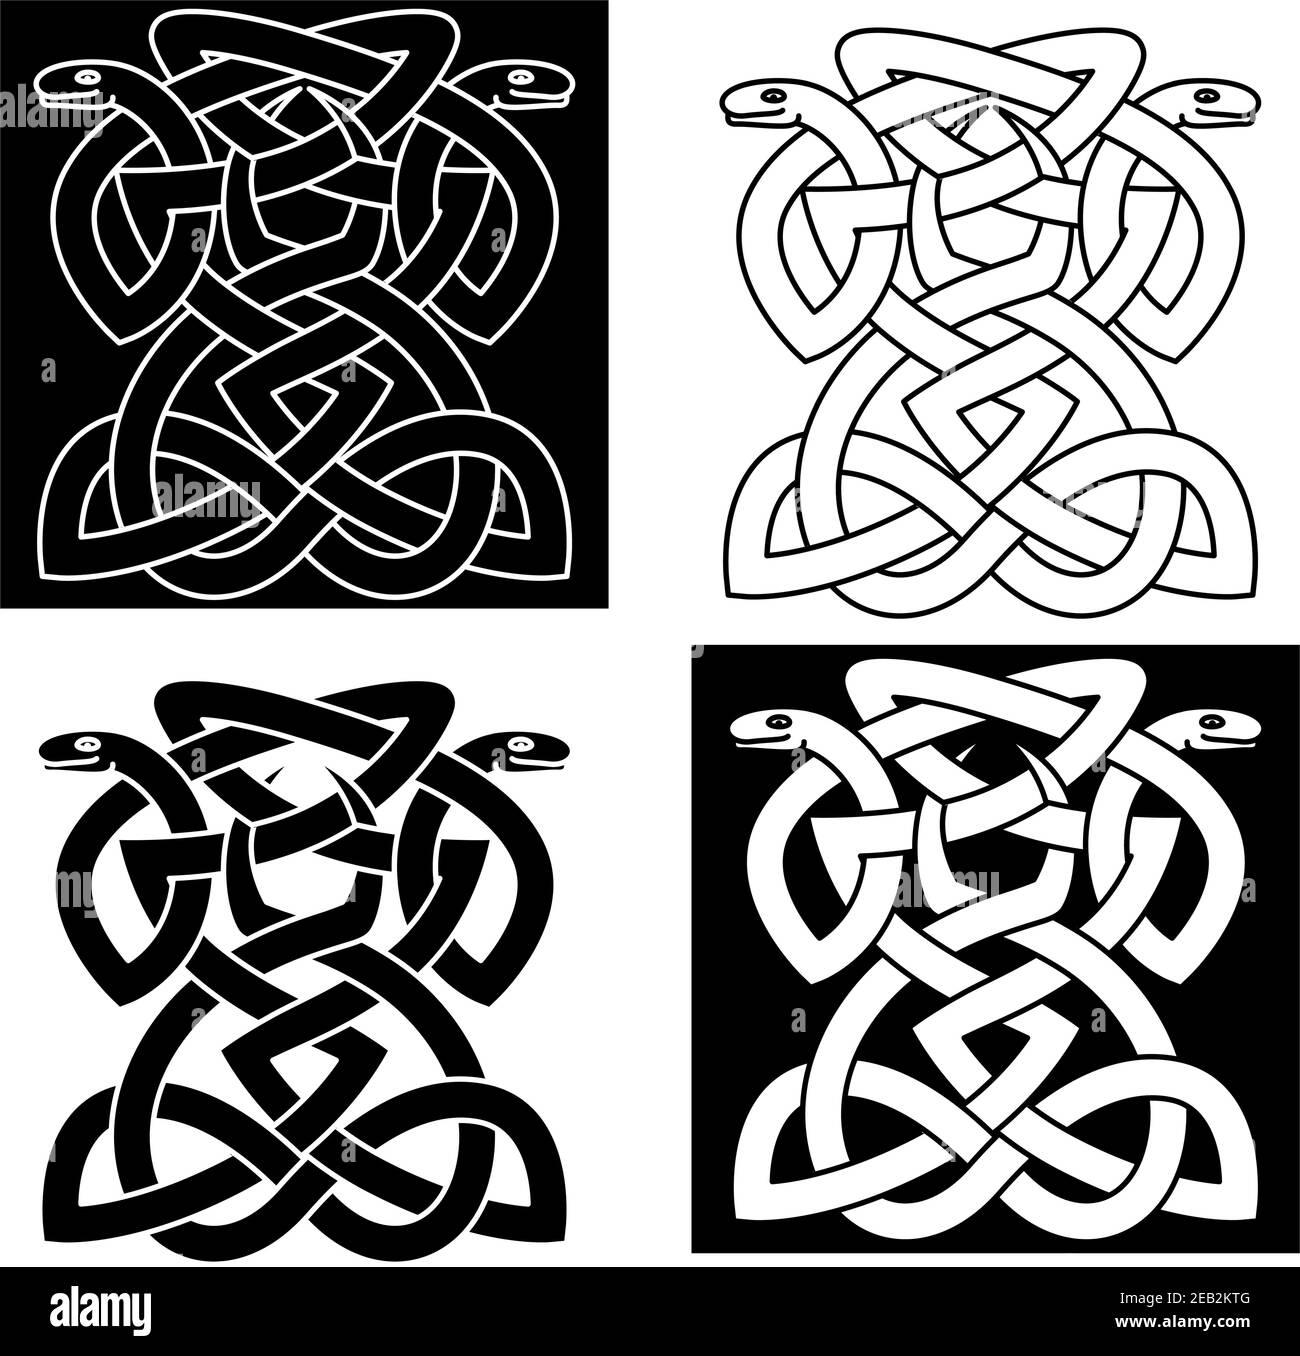 Les serpents entrelacés complexes forment des emblèmes formant un modèle géométrique dans différents des variantes pour un tatouage élégant ou un art Illustration de Vecteur